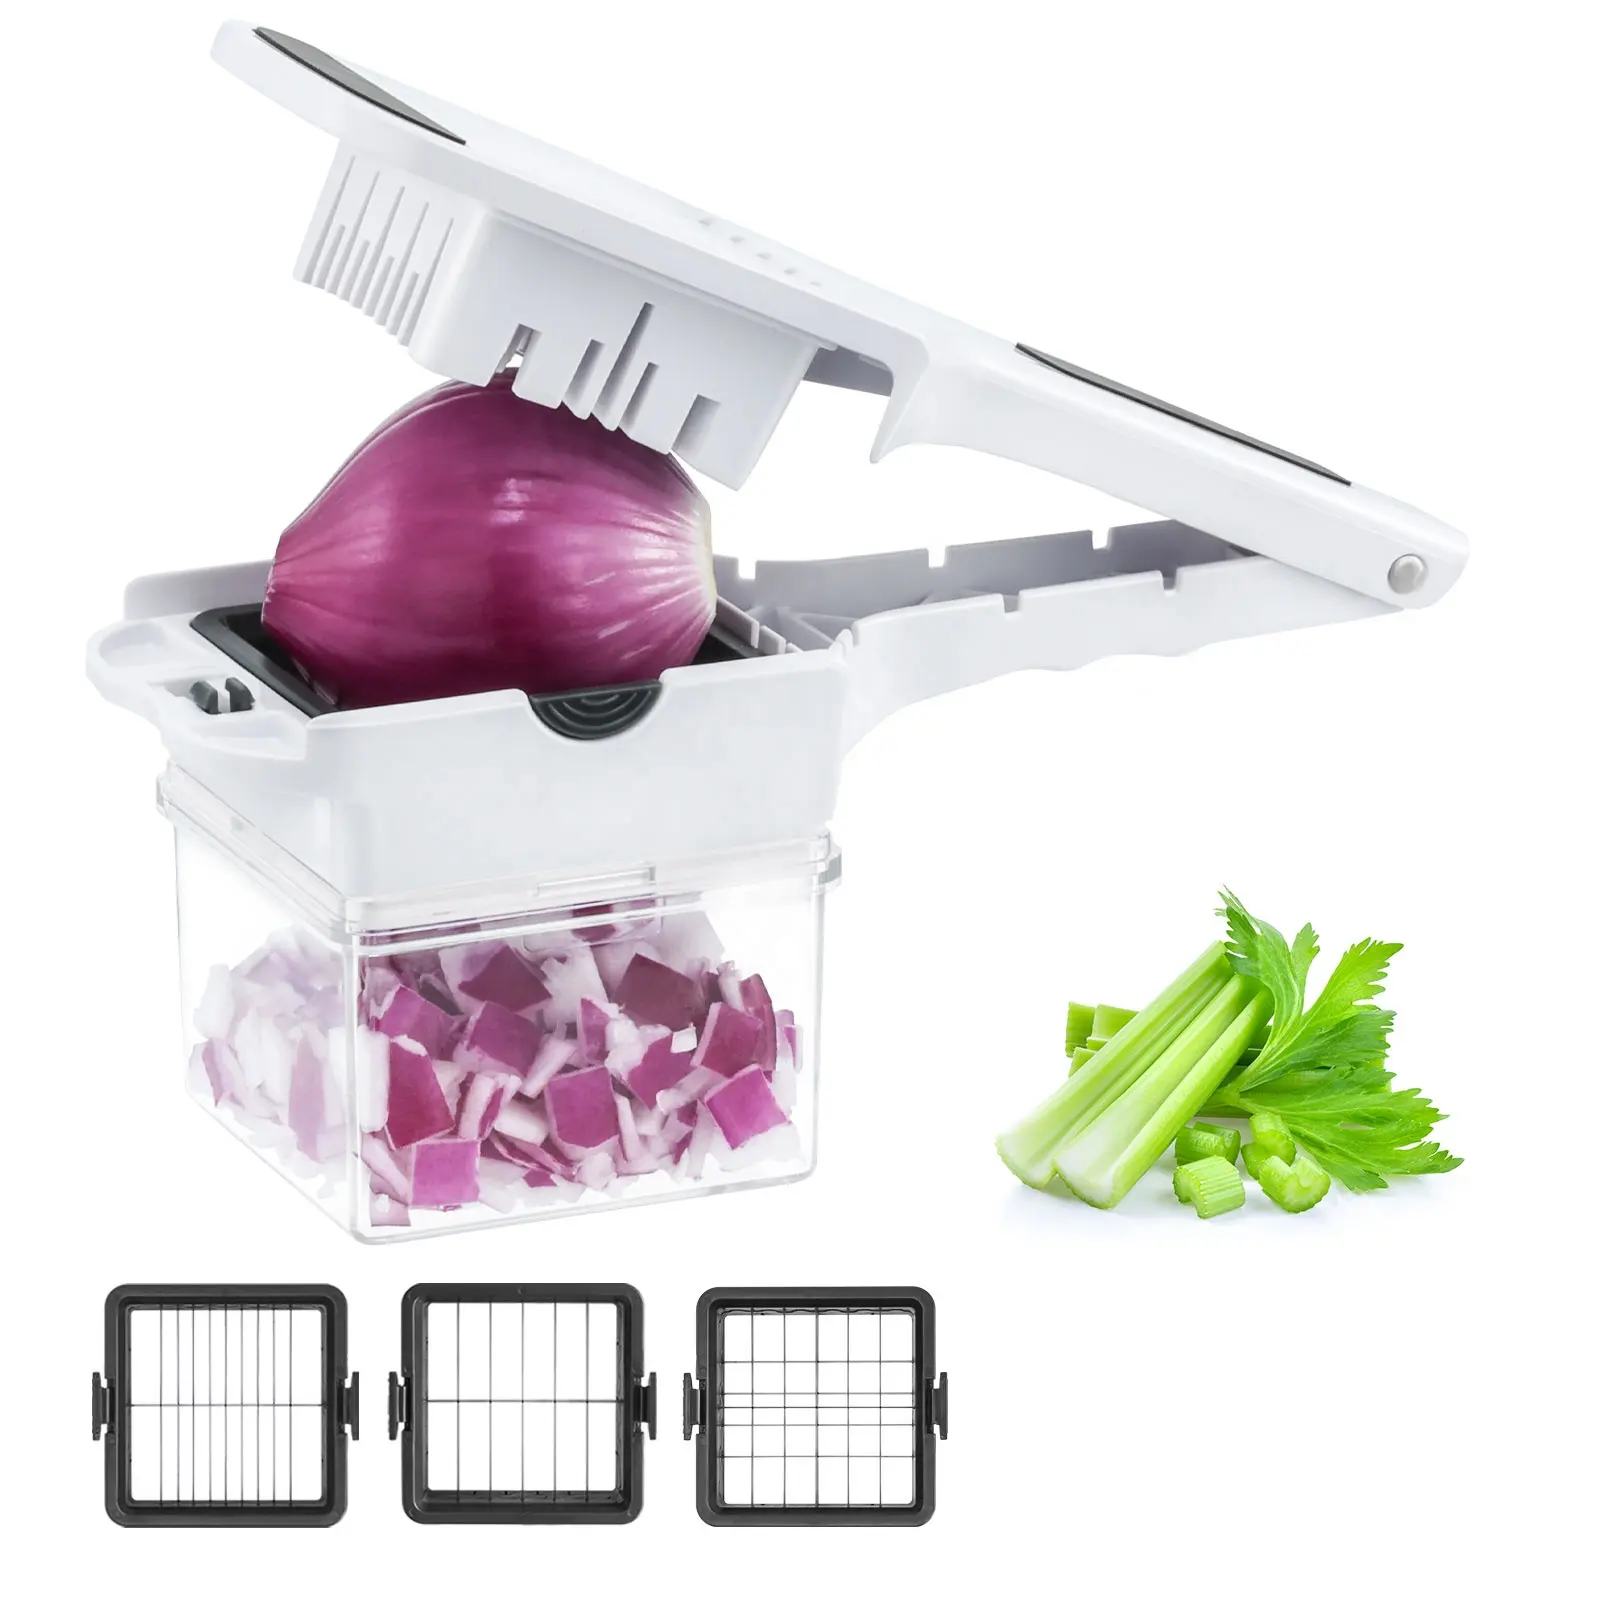 เครื่องหั่นผัก3 in 1แบบใช้มือใช้ในครัวเครื่องหั่นกระเทียมสับด้วยมือเครื่องหั่นผัก